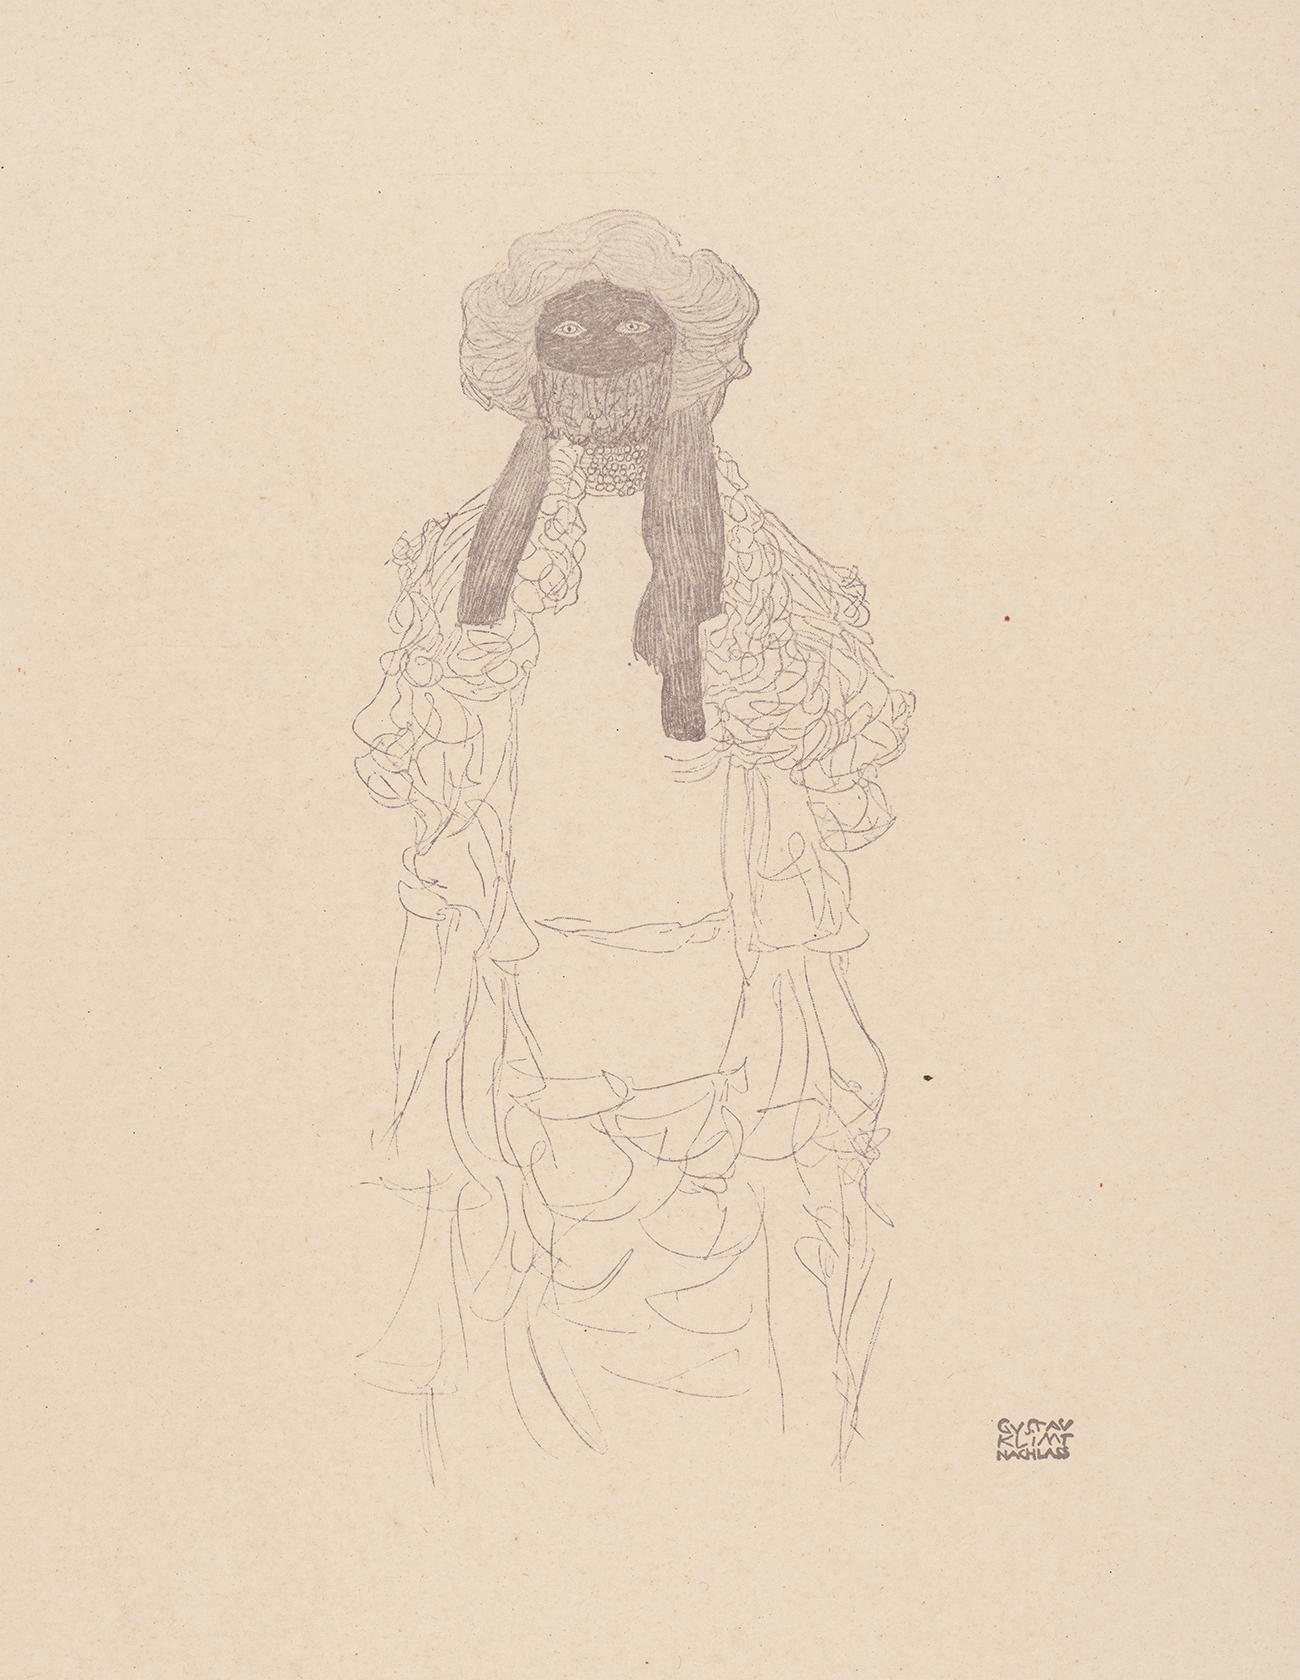 Woman in scarf, Gustav Klimt Handzeichnungen (Sketch), Thyrsos Verlag, 1922